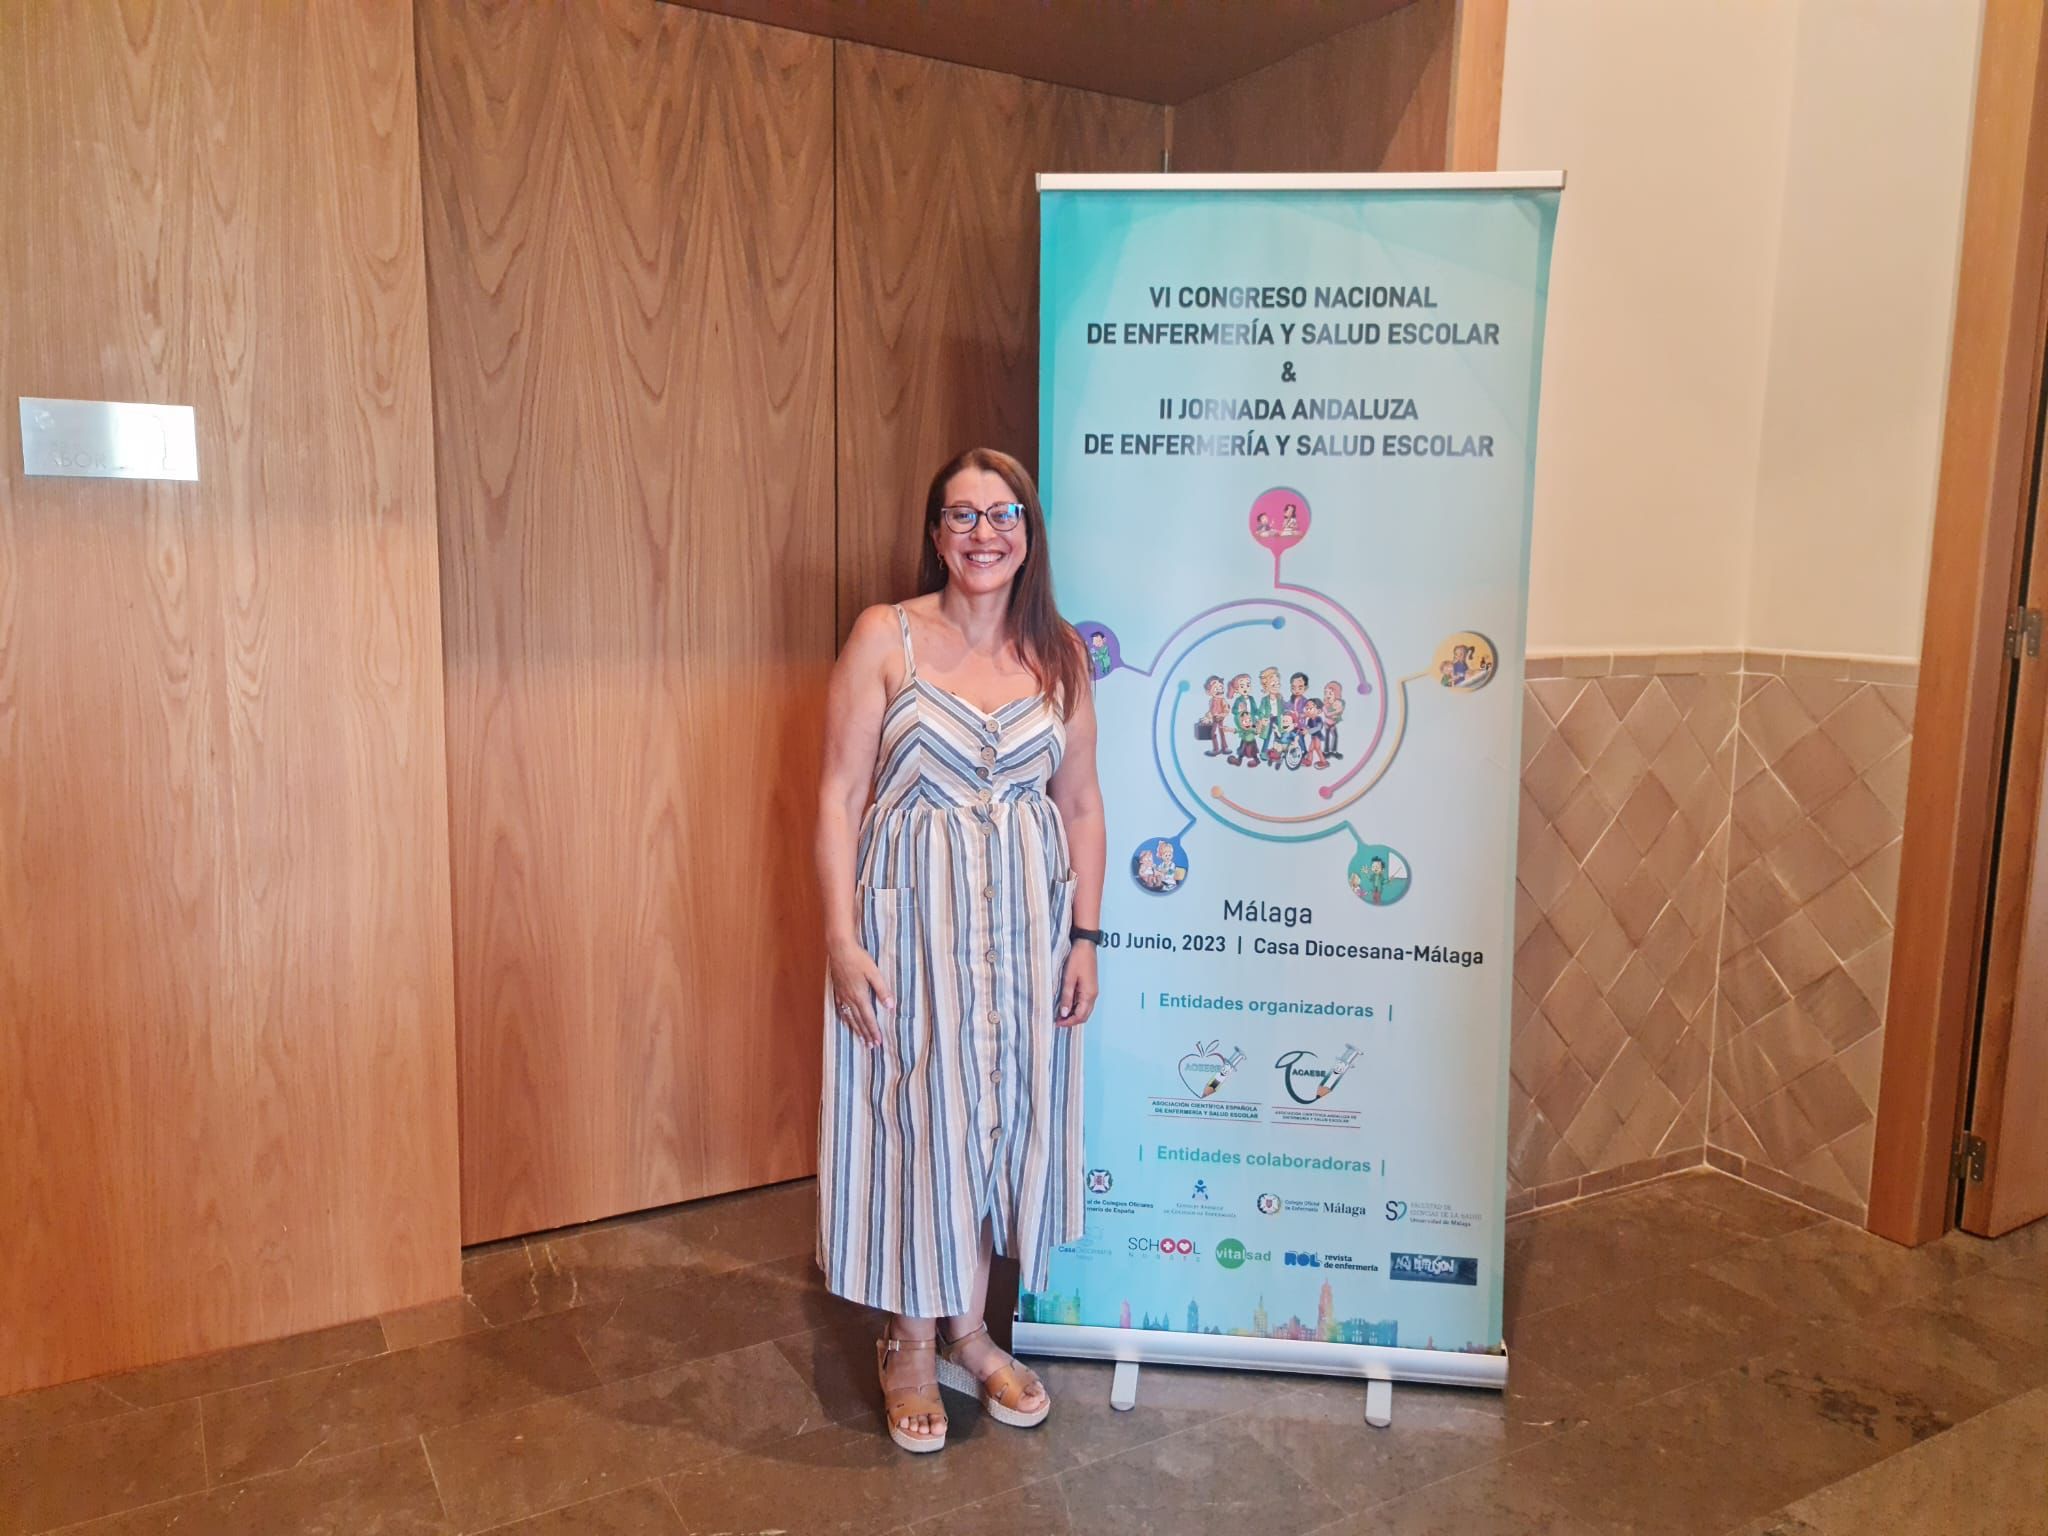 La enfermera Pilar Santana Vega presenta en Málaga los datos más relevantes de este proyecto piloto, pionero en Canarias, en el transcurso del Congreso Nacional de Enfermería y Salud Escolar